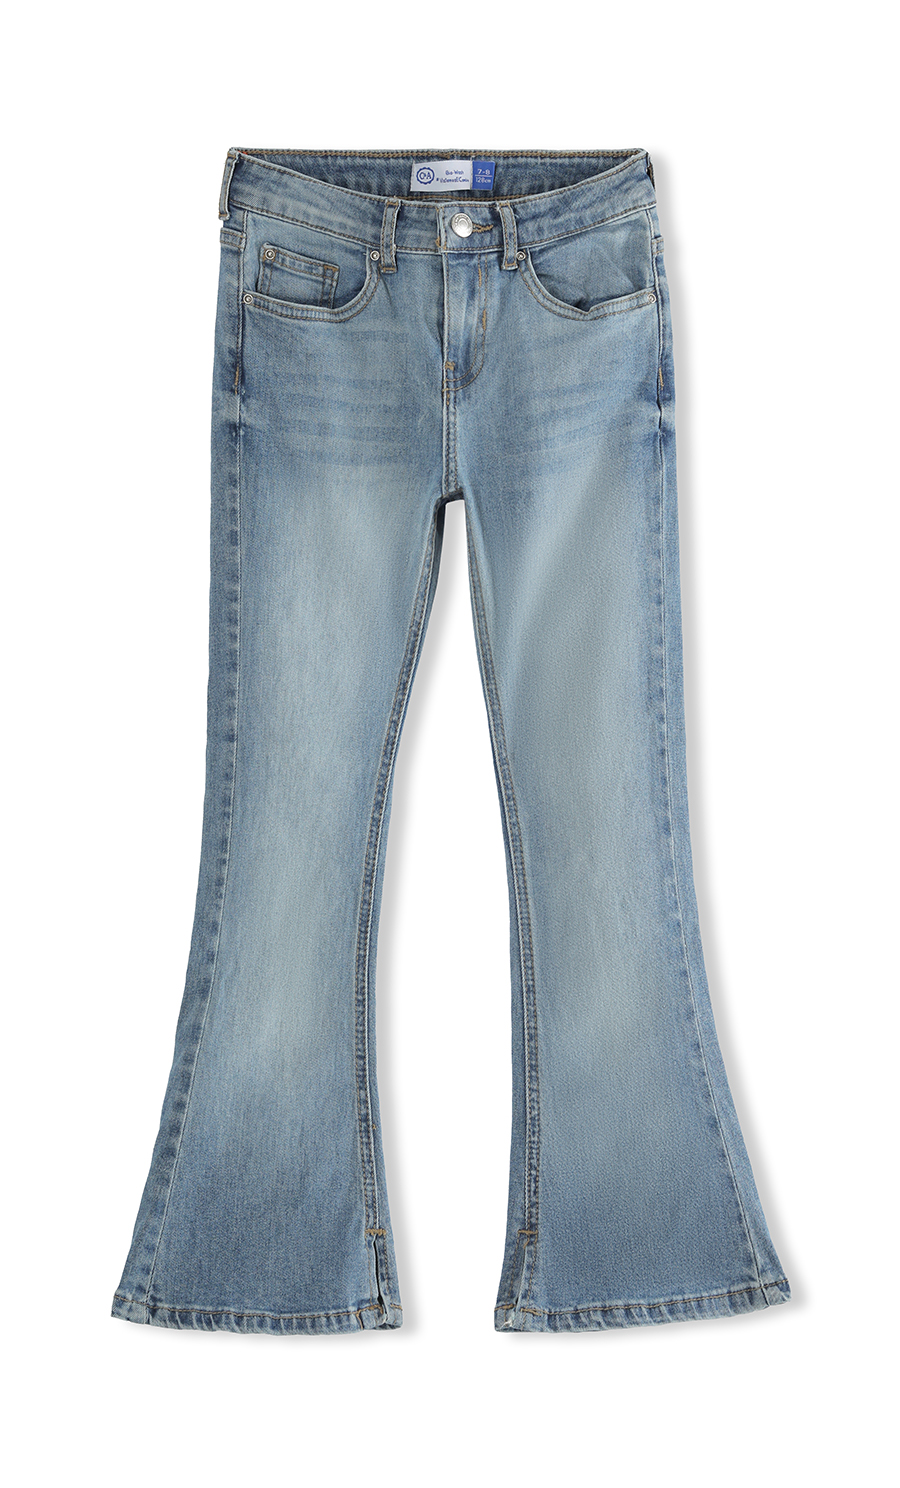 Jeans Acampanado Deslavado